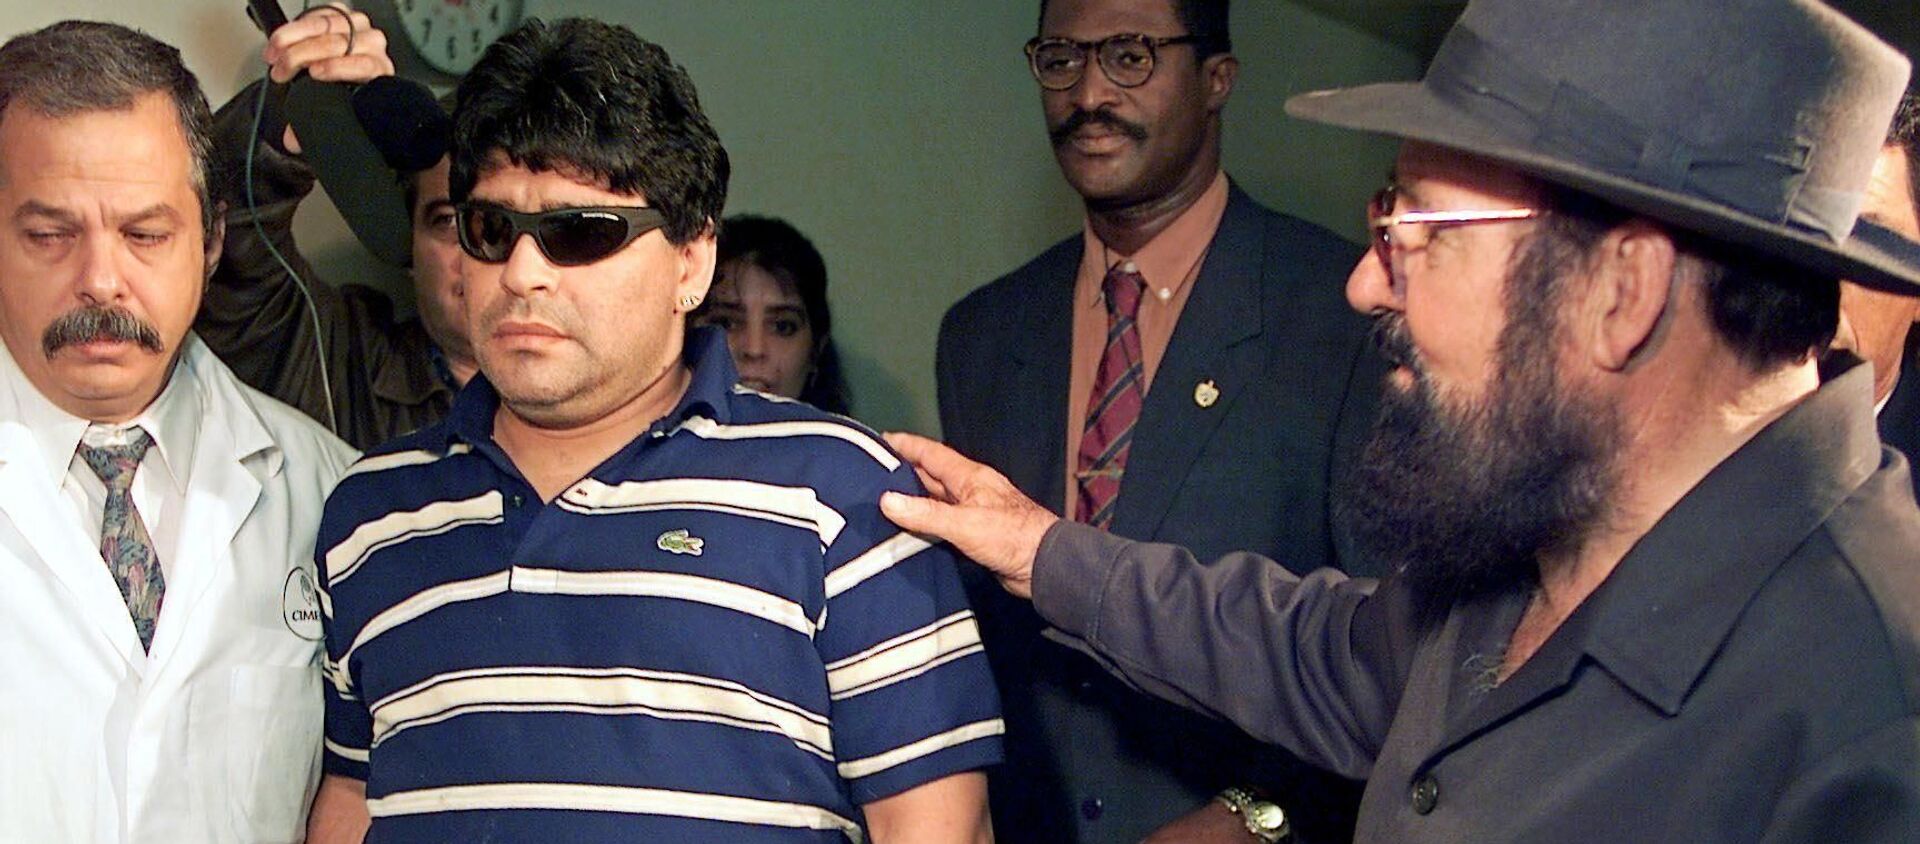 Diego Maradona llegando al Hospital Psiquiátrico de La Habana, para internarse por el consumo abusivo de drogas, en el 2000 - Sputnik Mundo, 1920, 26.11.2020